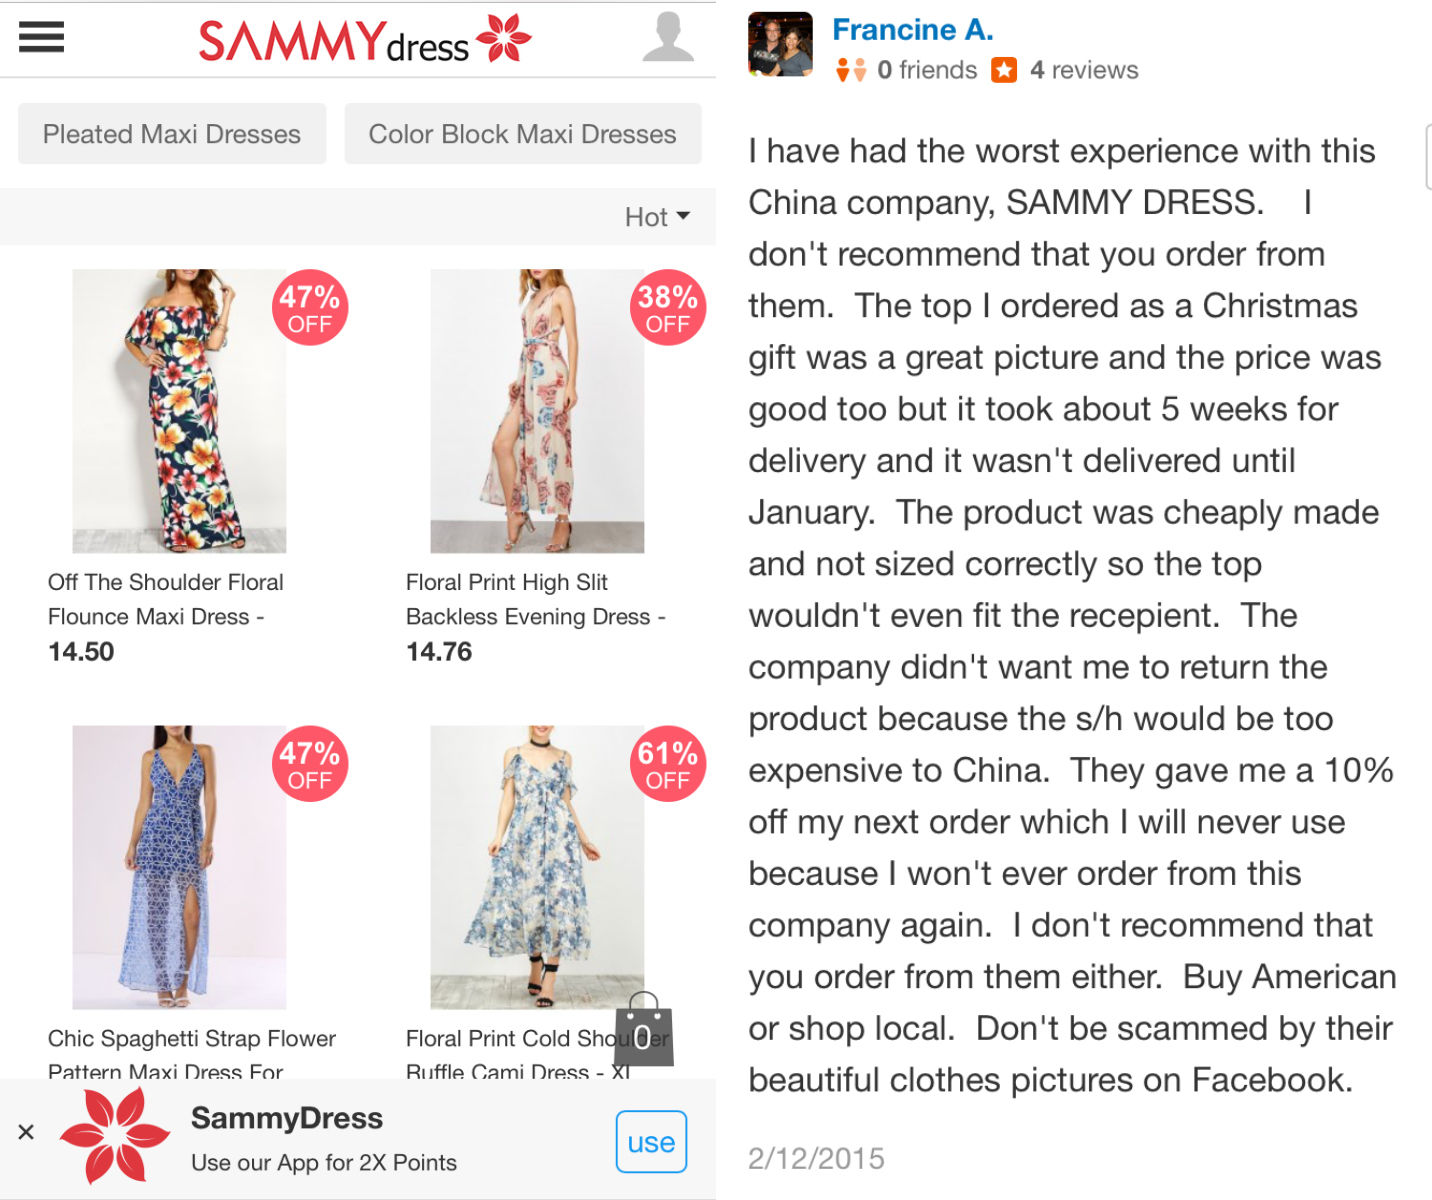 sammy dress online shopping